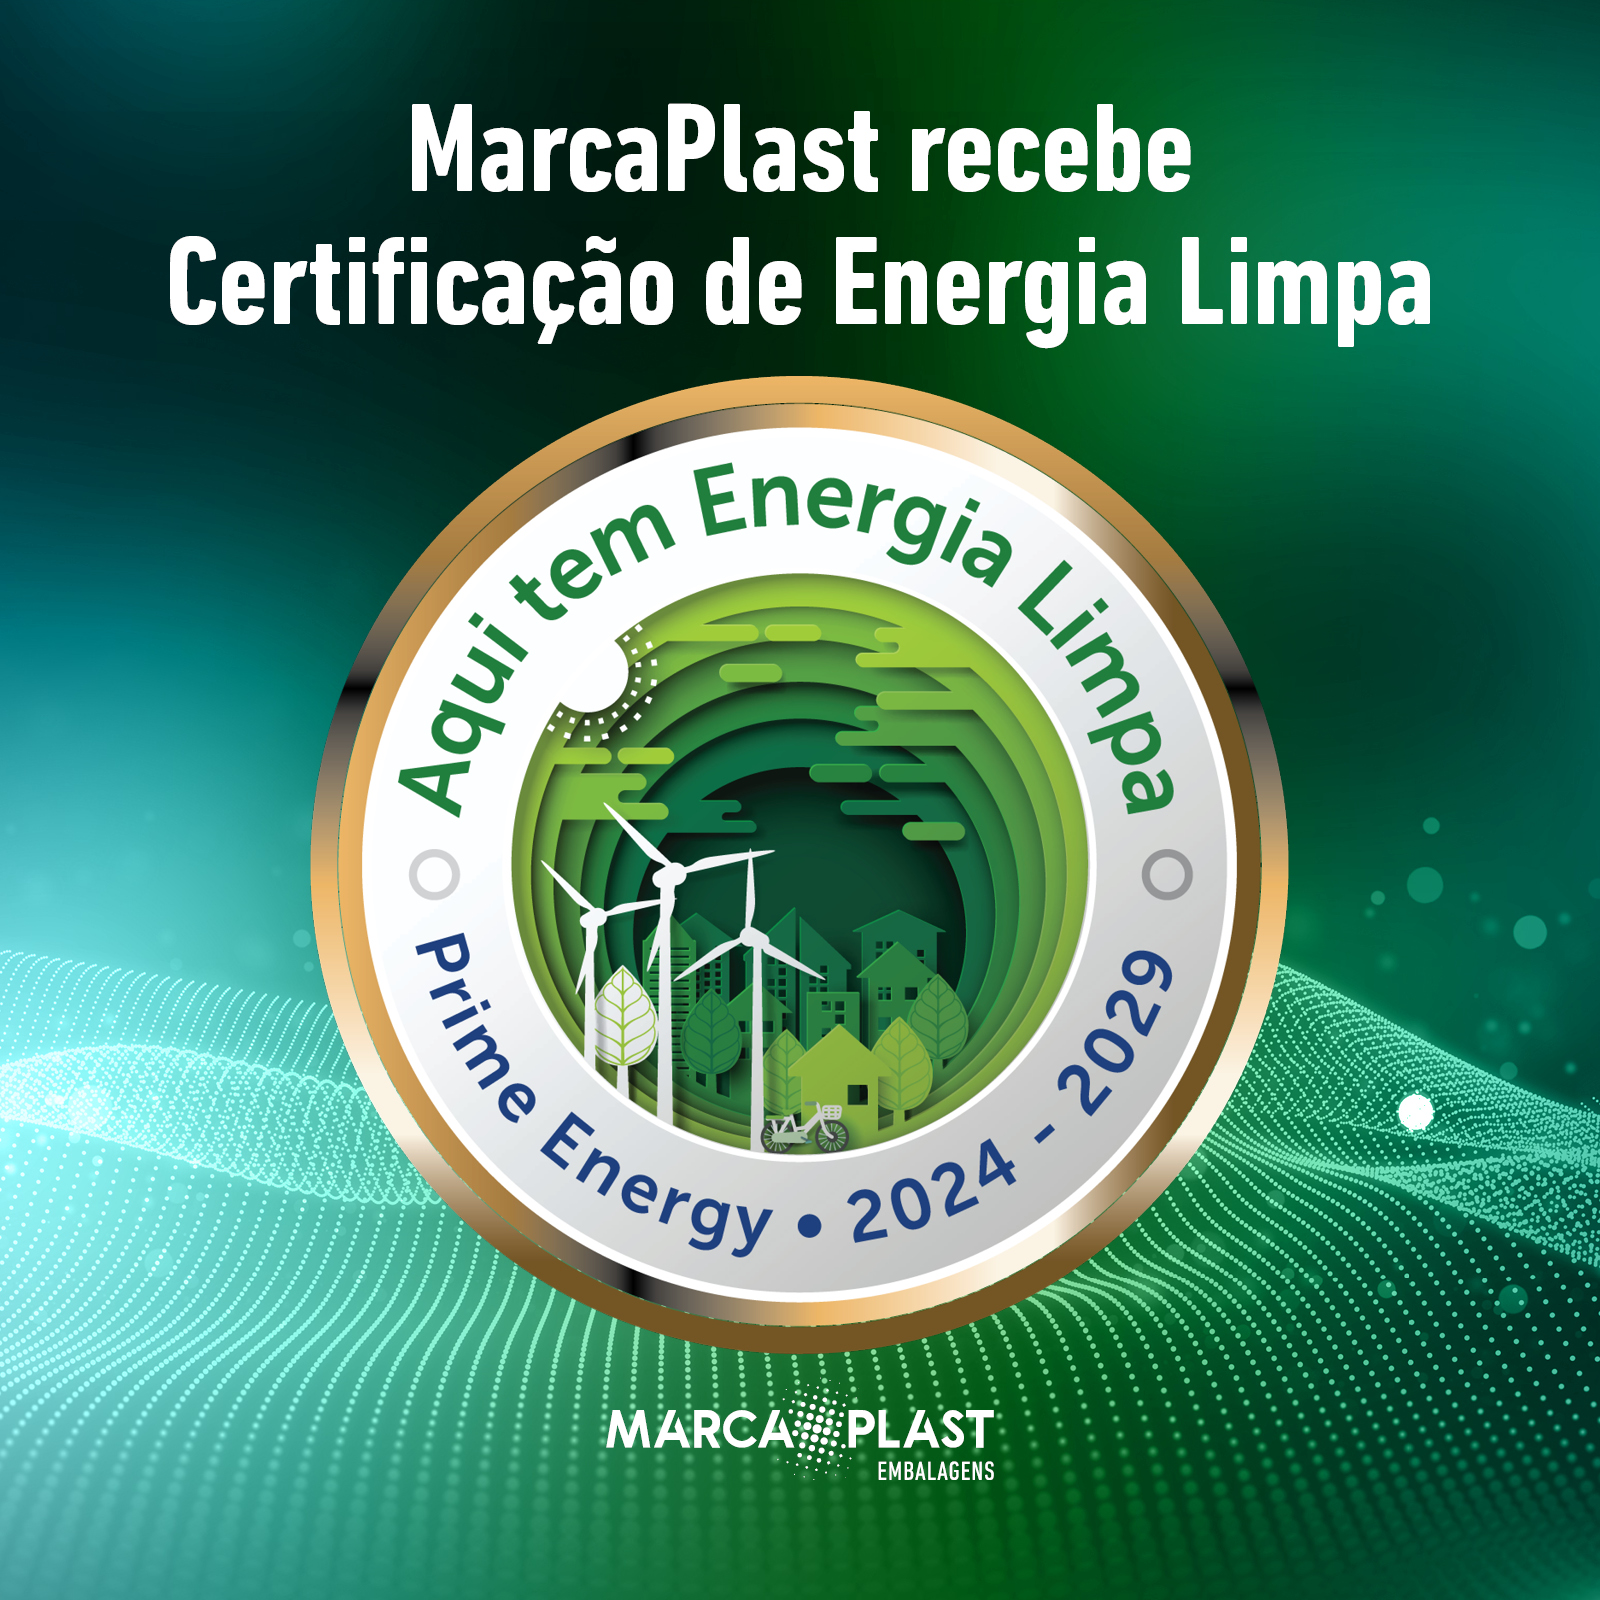 MarcaPlast recebe Certificação de Energia Limpa